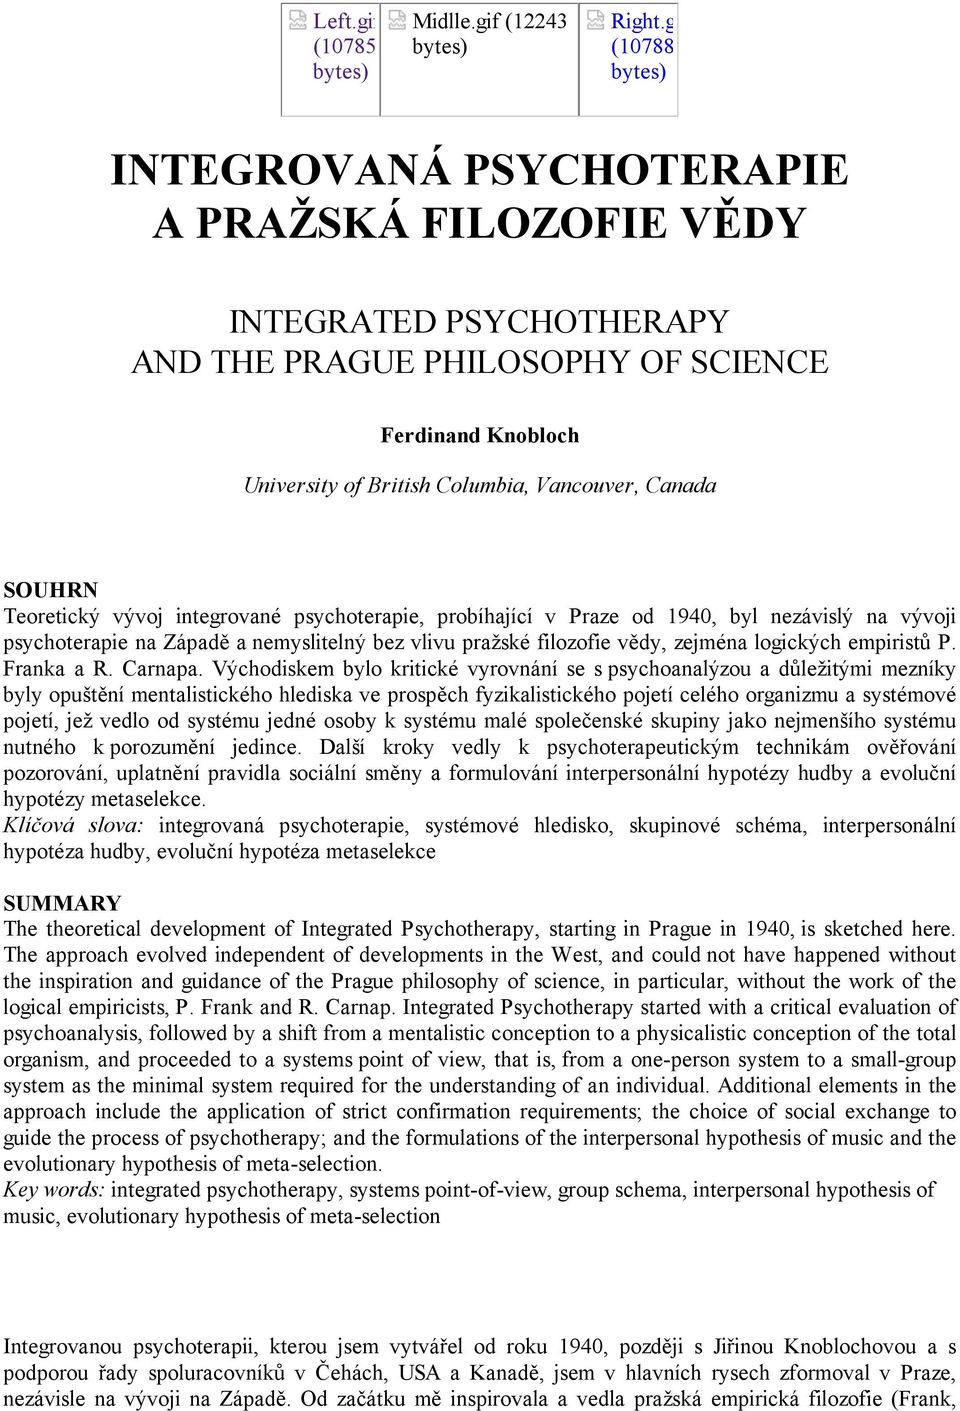 SOUHRN Teoretický vývoj integrované psychoterapie, probíhající v Praze od 1940, byl nezávislý na vývoji psychoterapie na Západě a nemyslitelný bez vlivu pražské filozofie vědy, zejména logických